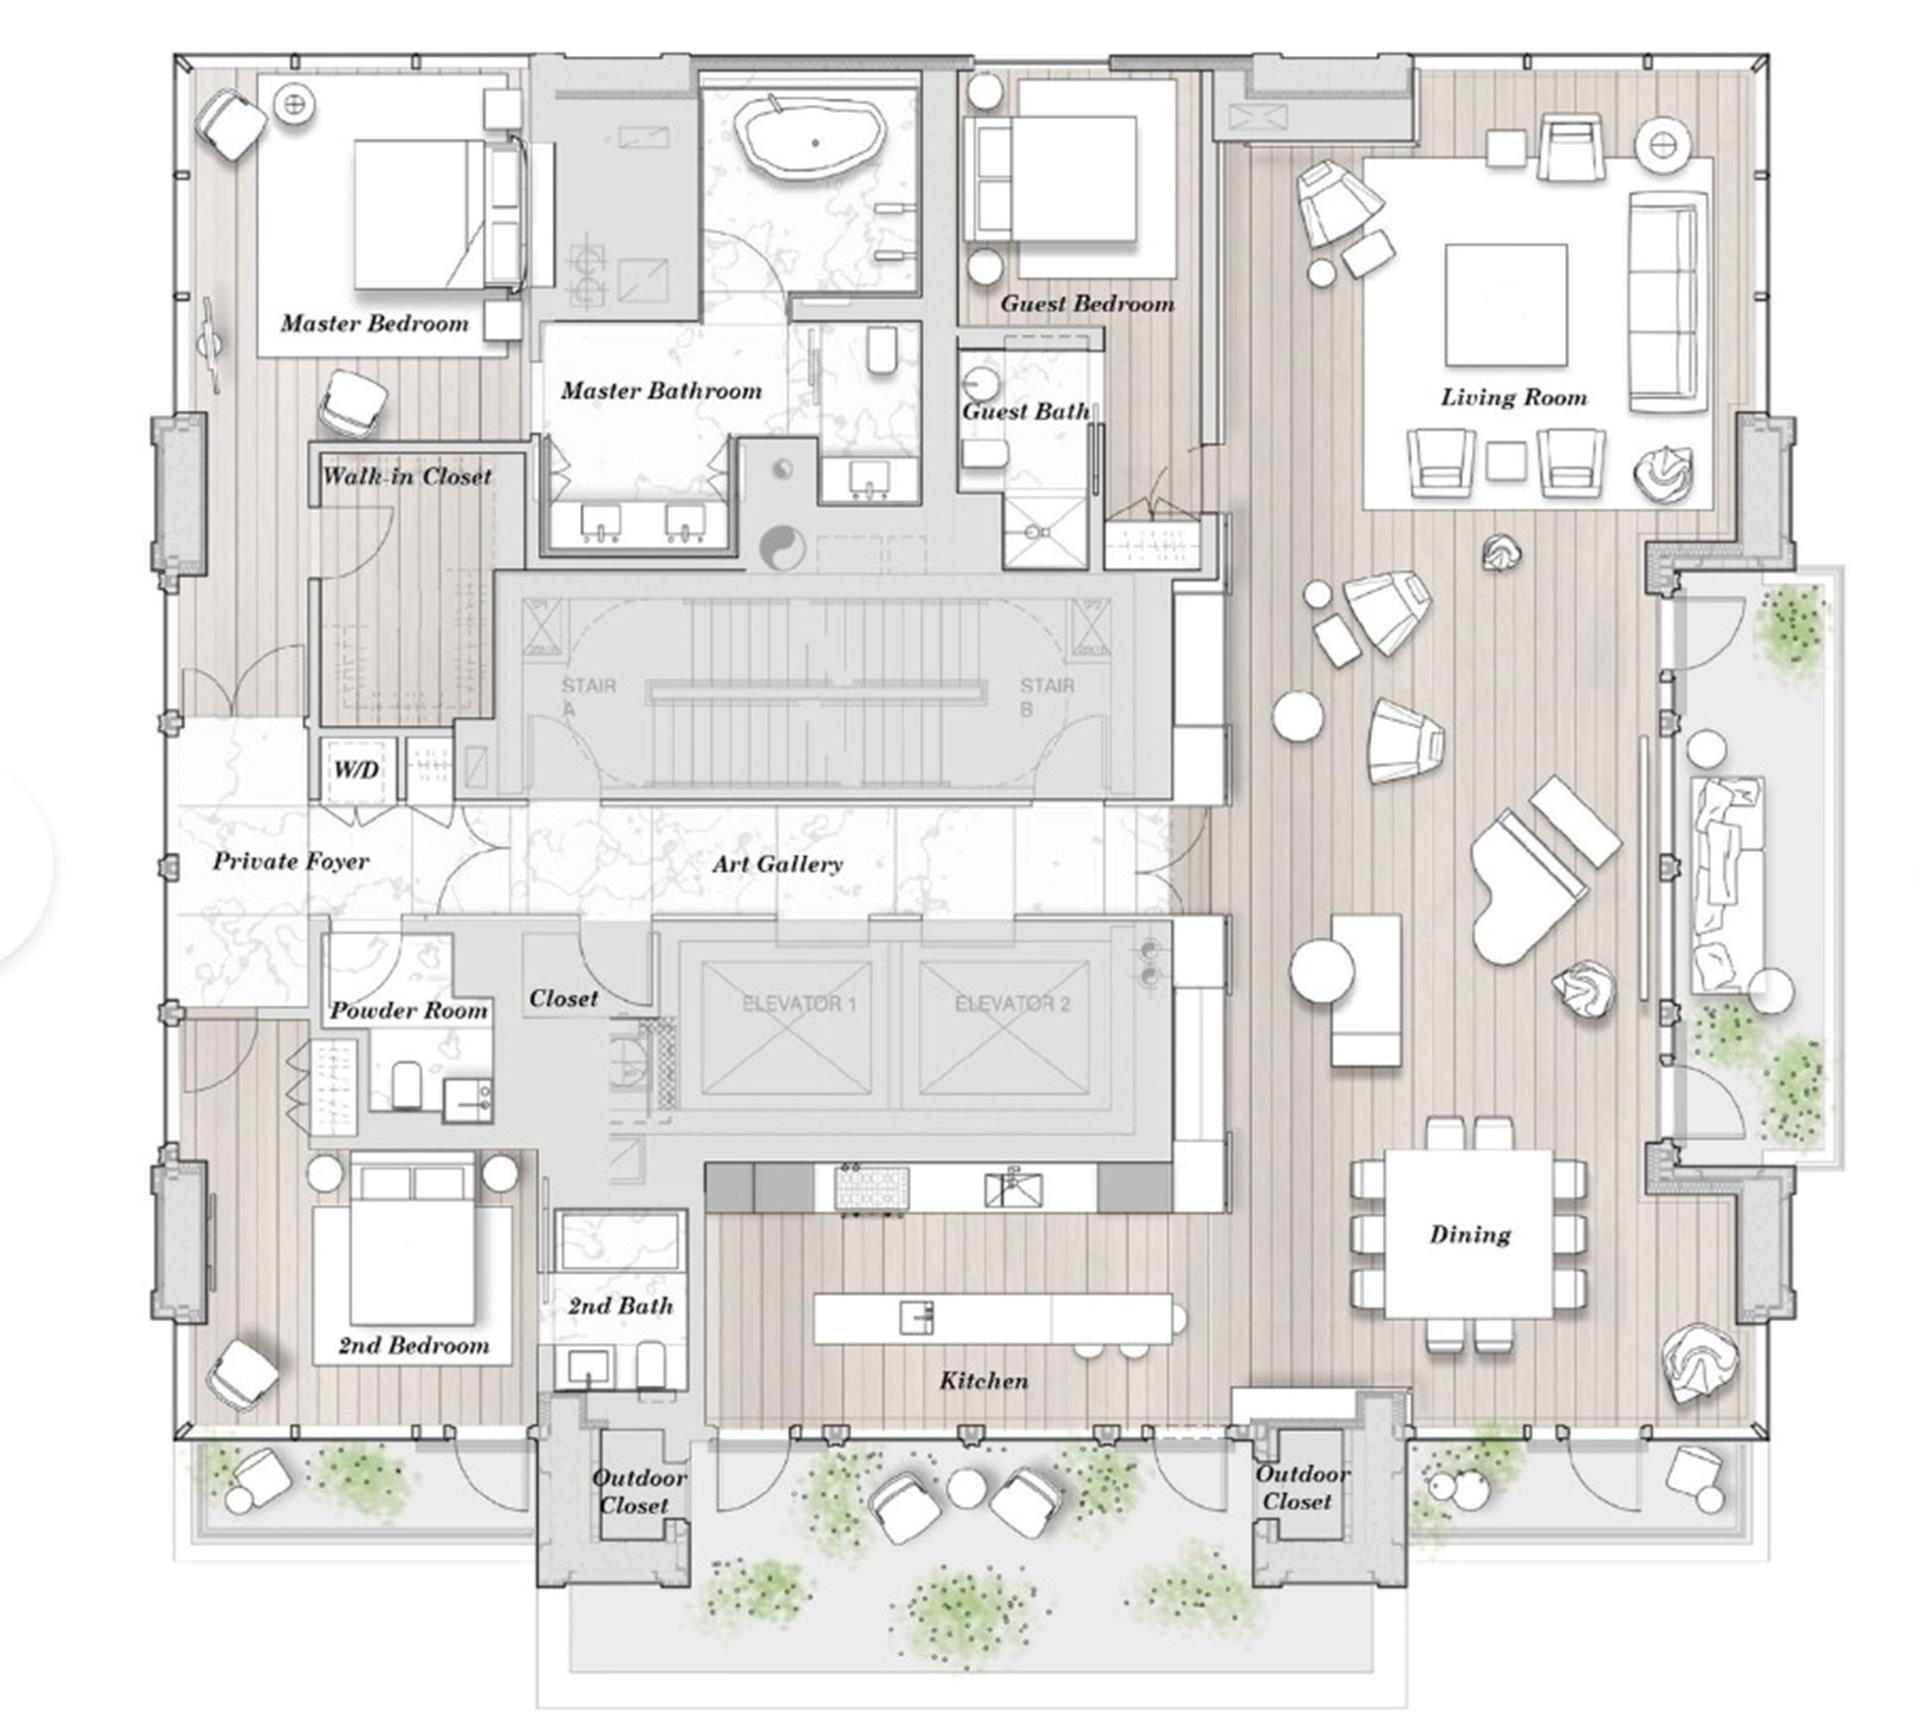 Floorplan for 172 Madison Avenue, PHA